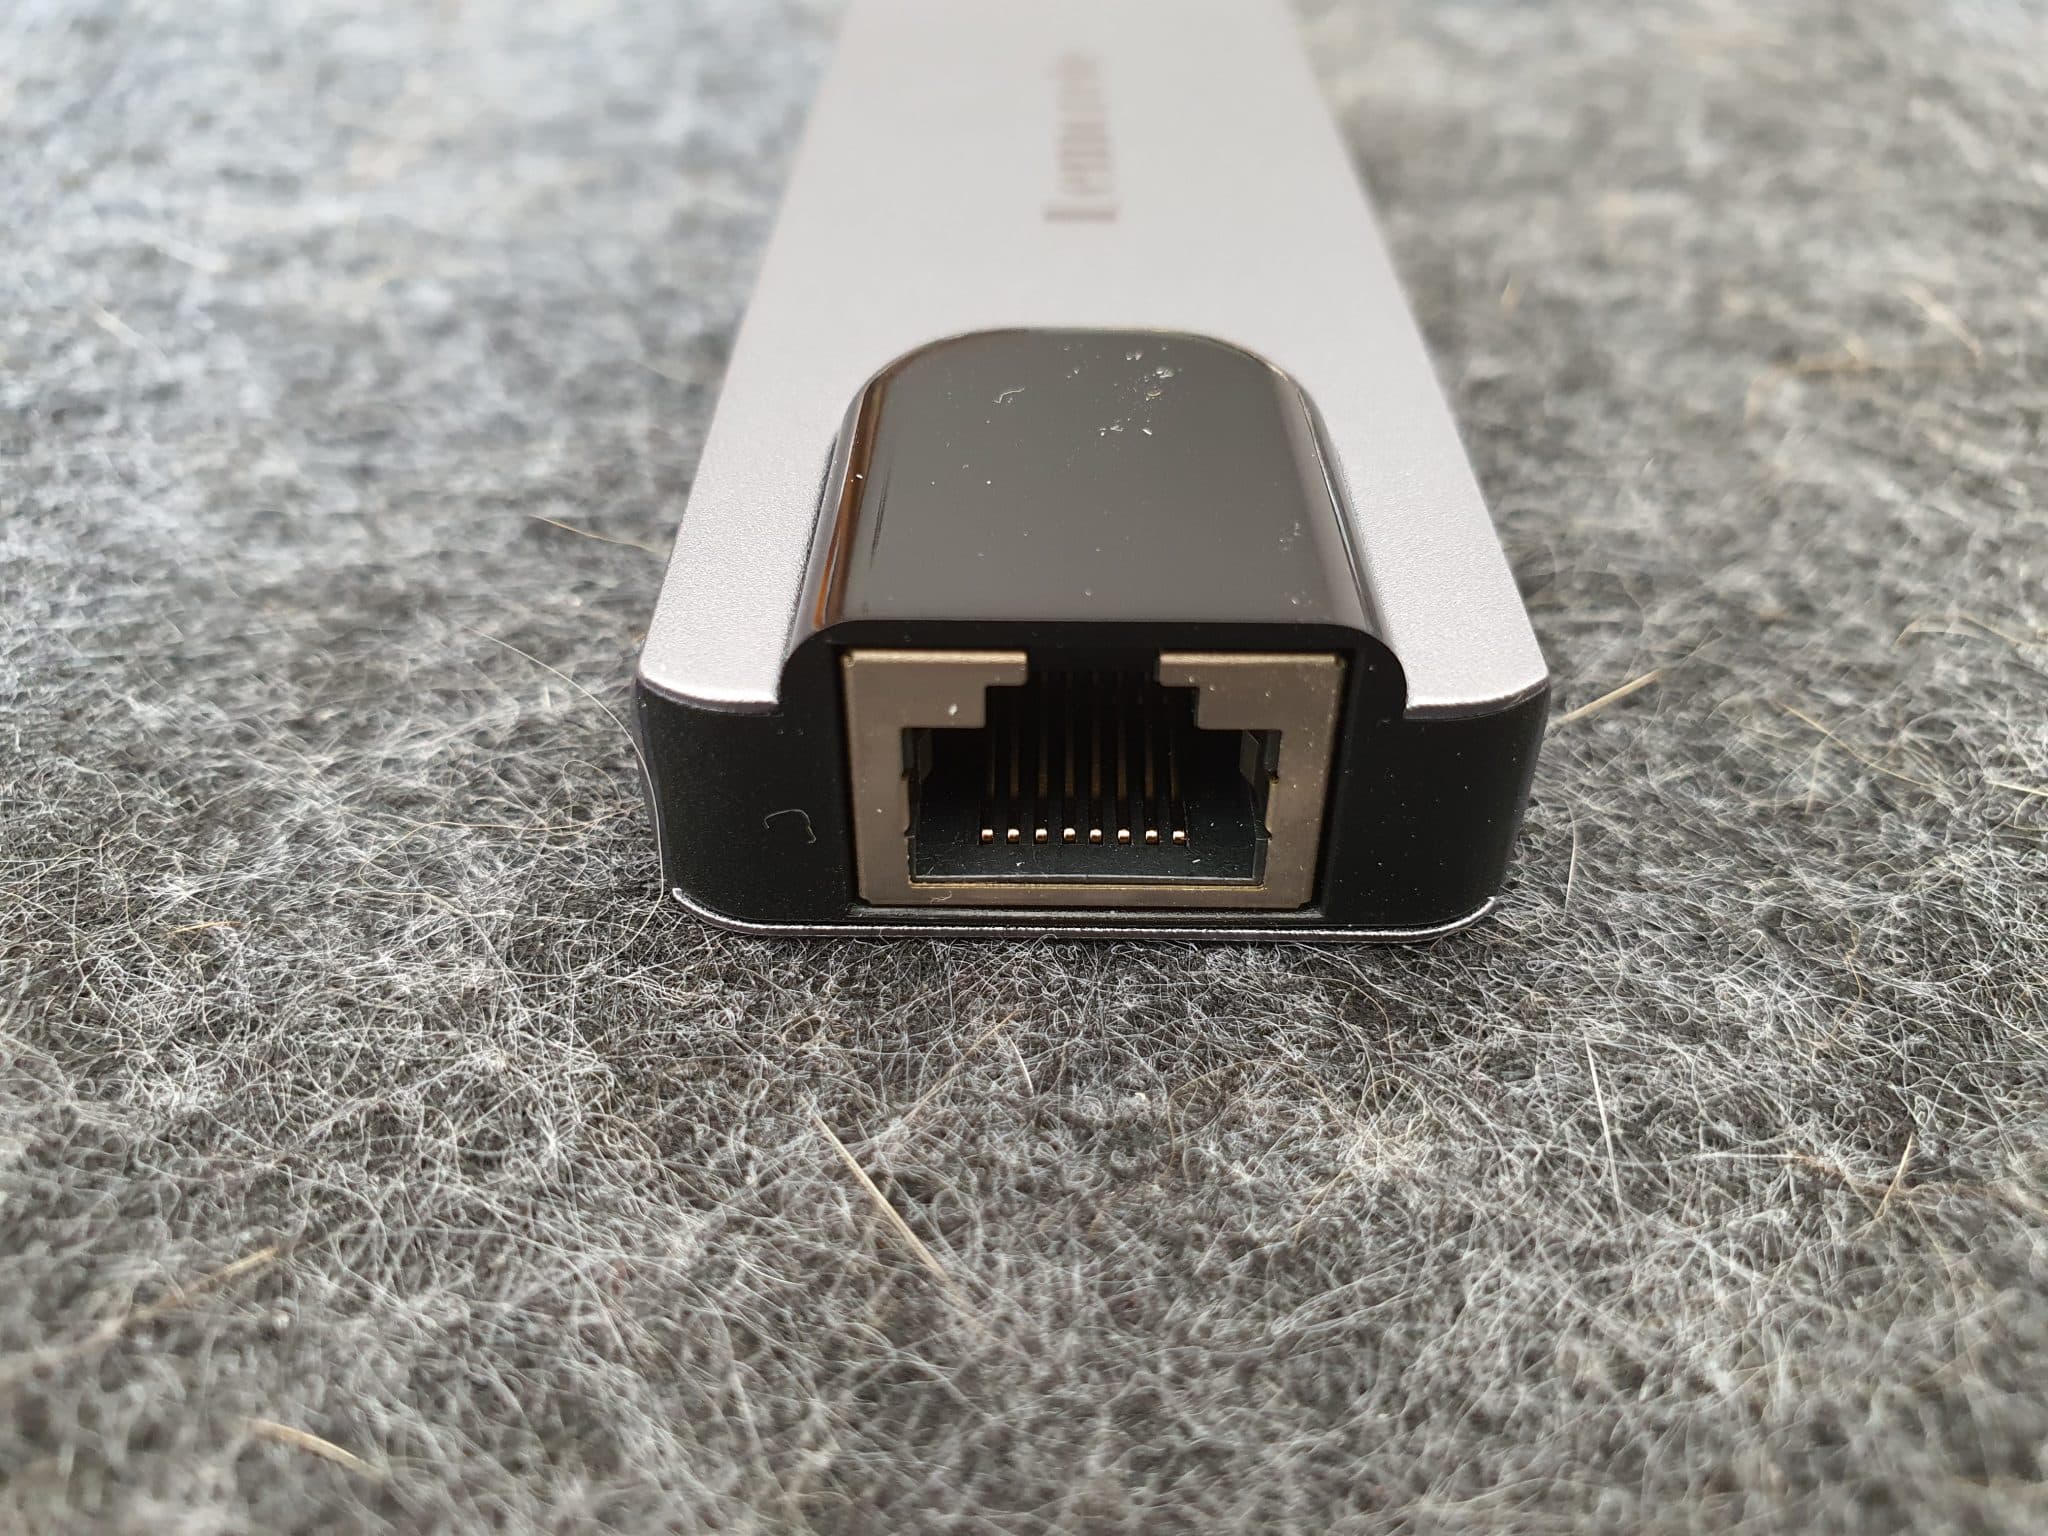 Lemorele Hub USB-C 5 in 1